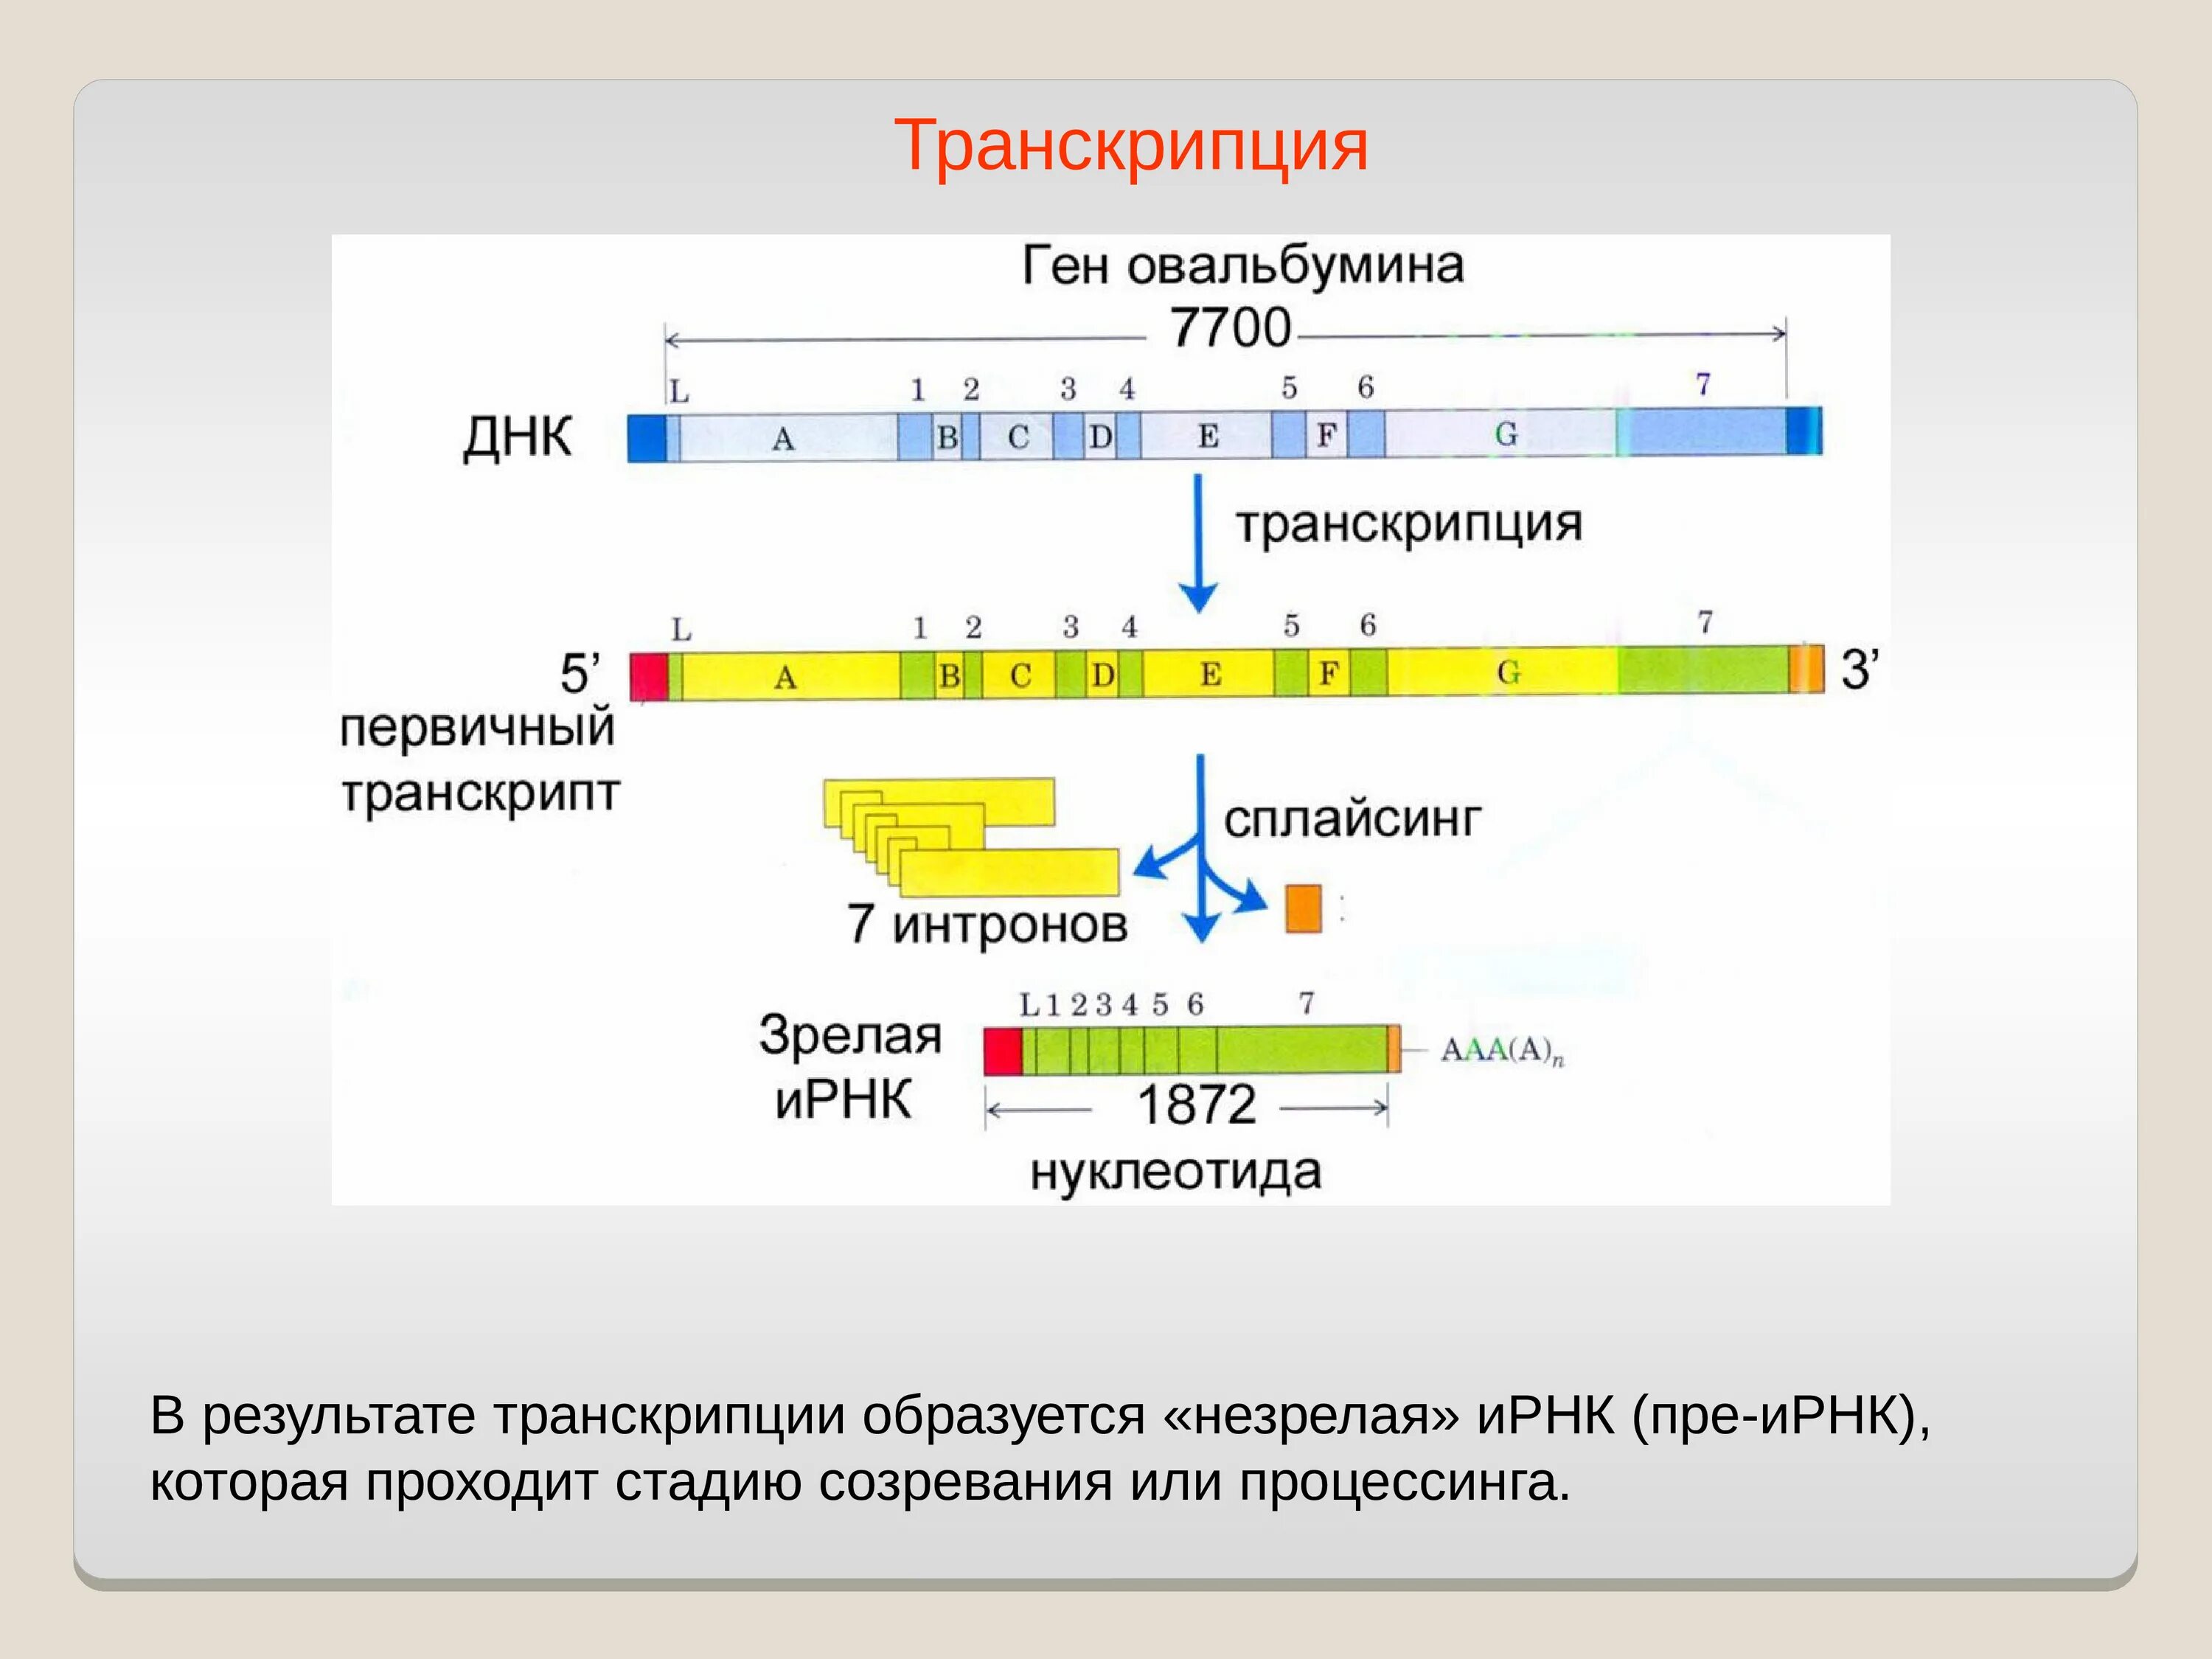 Транскрибируемая днк направление. Процессинг РНК этапы. Транскрипция. Транскрипция ДНК. Основной результат транскрипции.